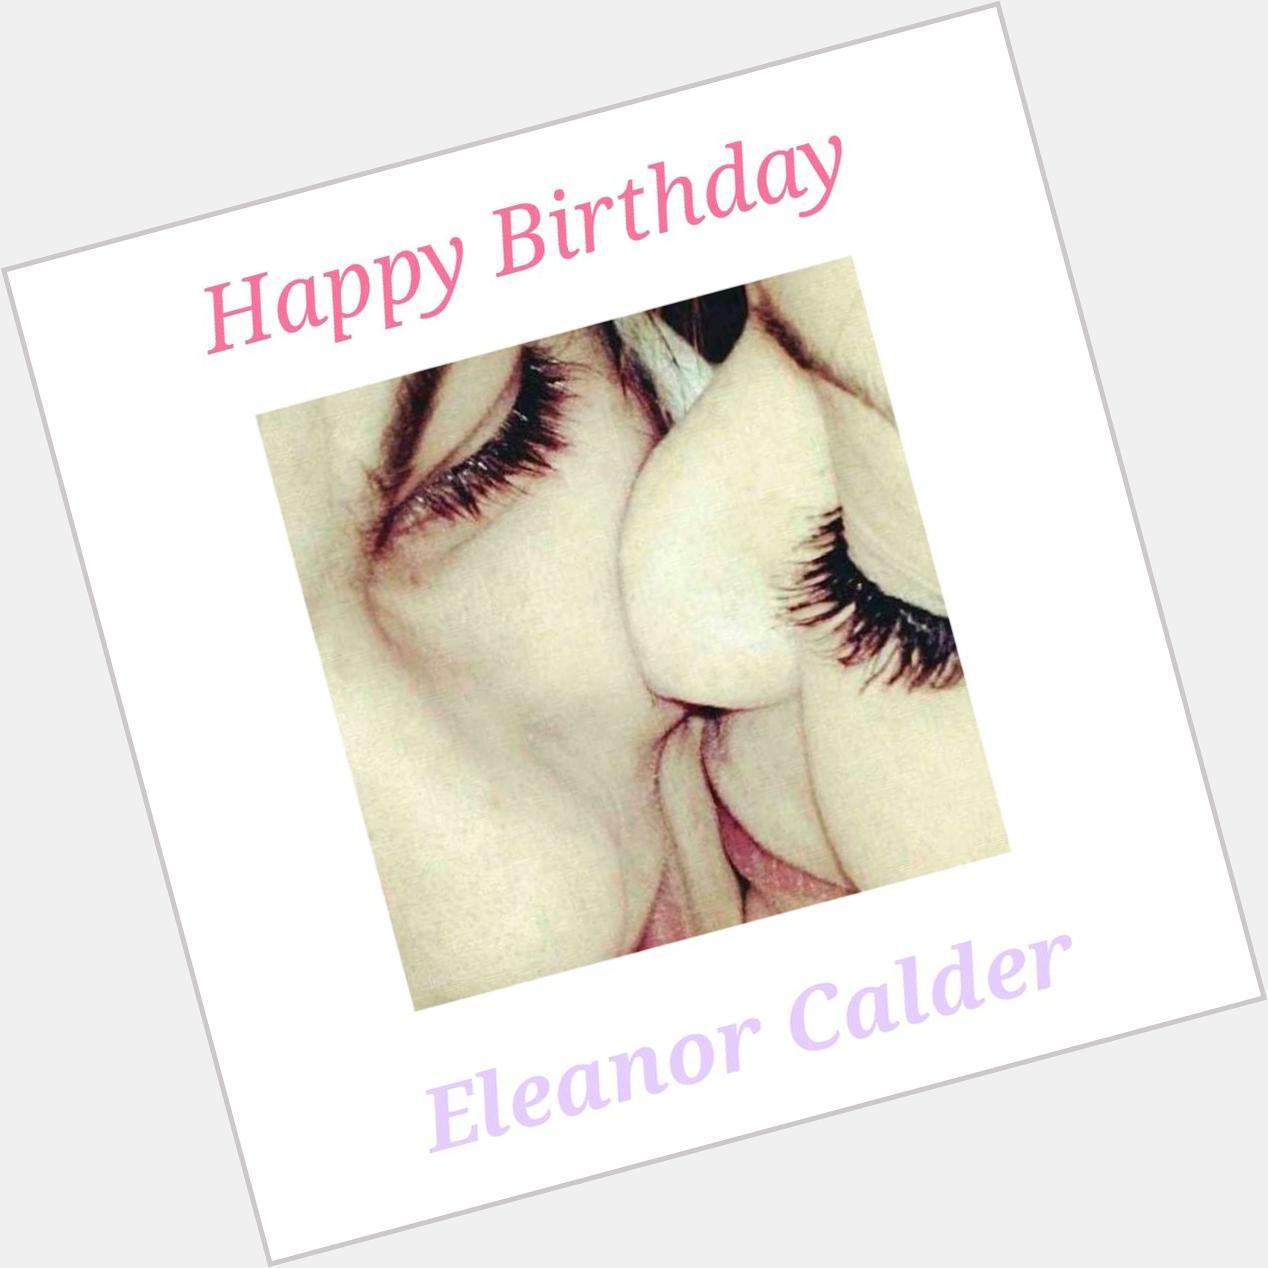 Happy Birthday Eleanor Calder 1992.07.16 